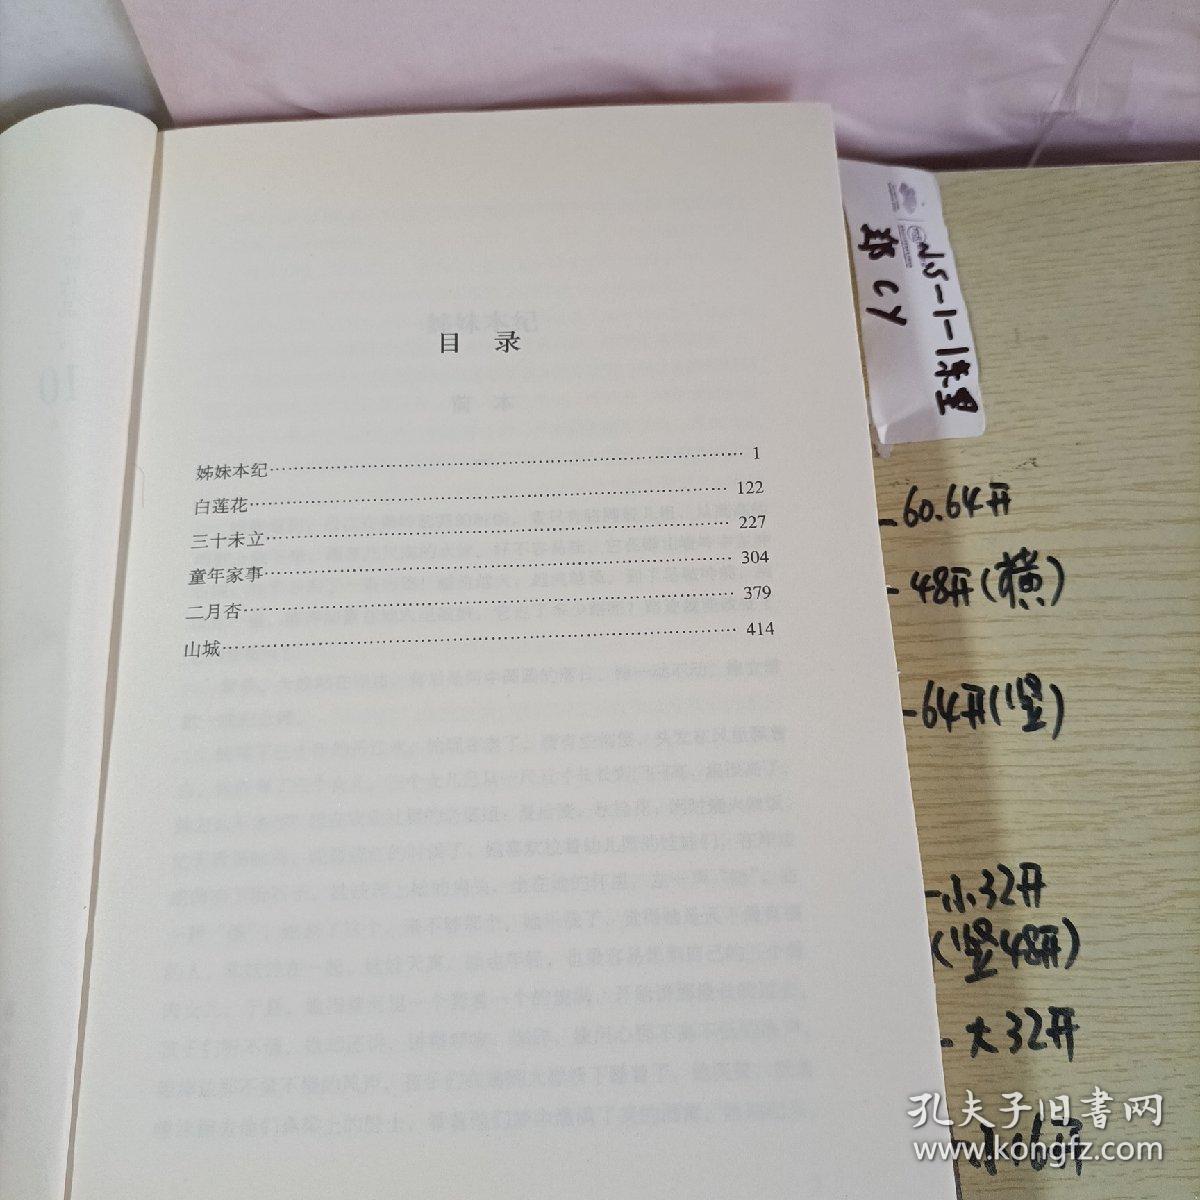 二月杏-贾平凹作品-第10卷